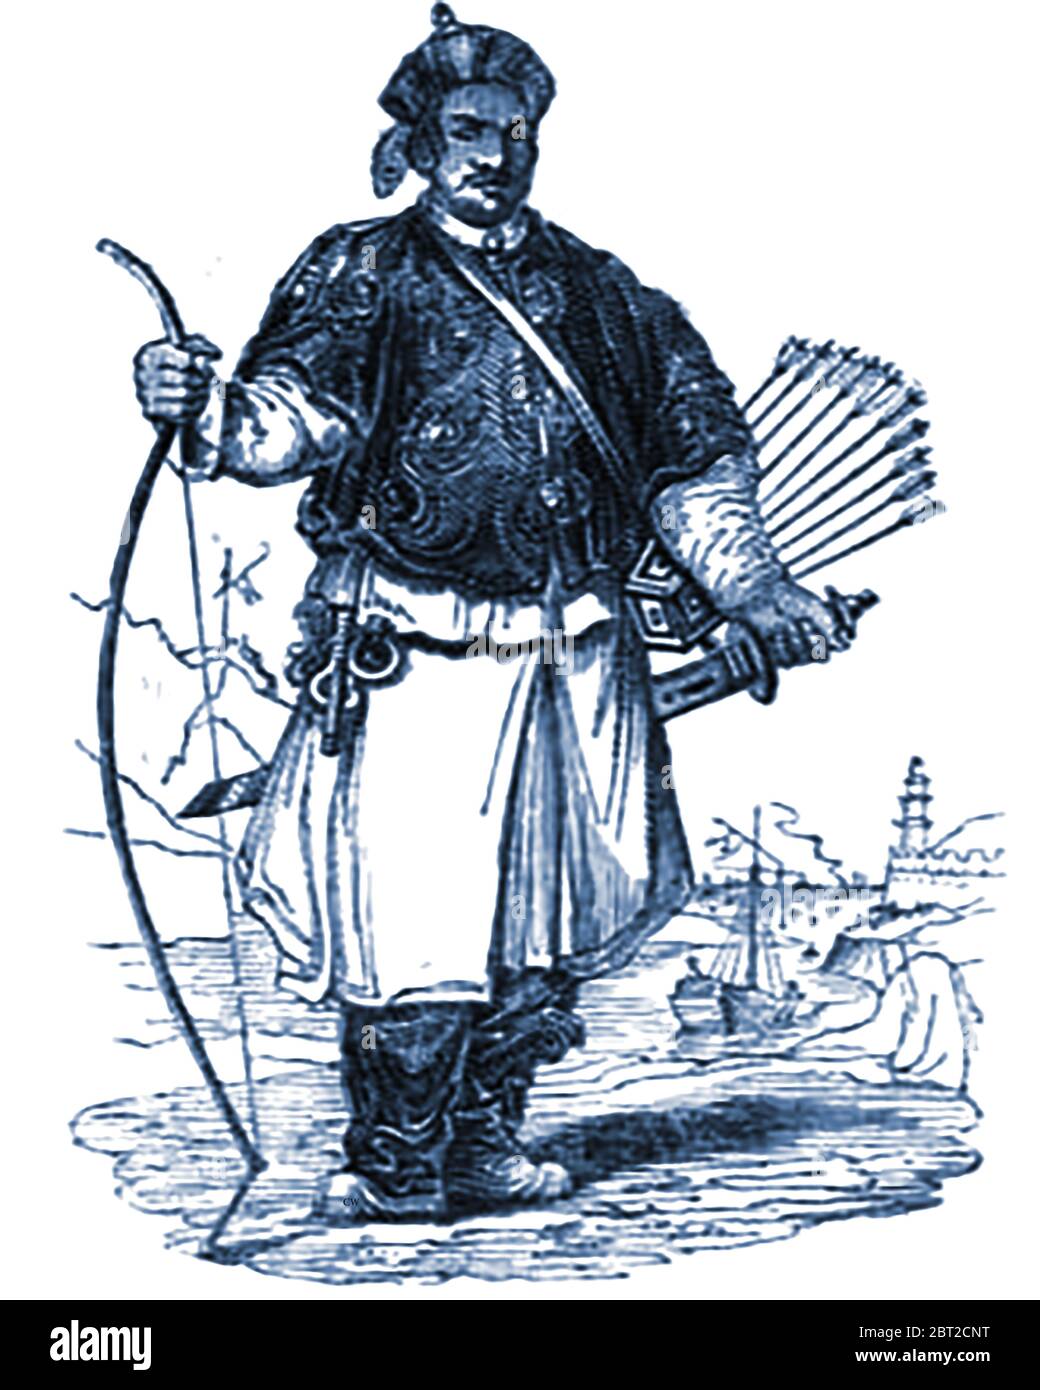 Eine Abbildung aus den 1840er Jahren zeigt den chinesischen Artilleriesoldaten (bowman) in der Uniform der damaligen Zeit. Stockfoto